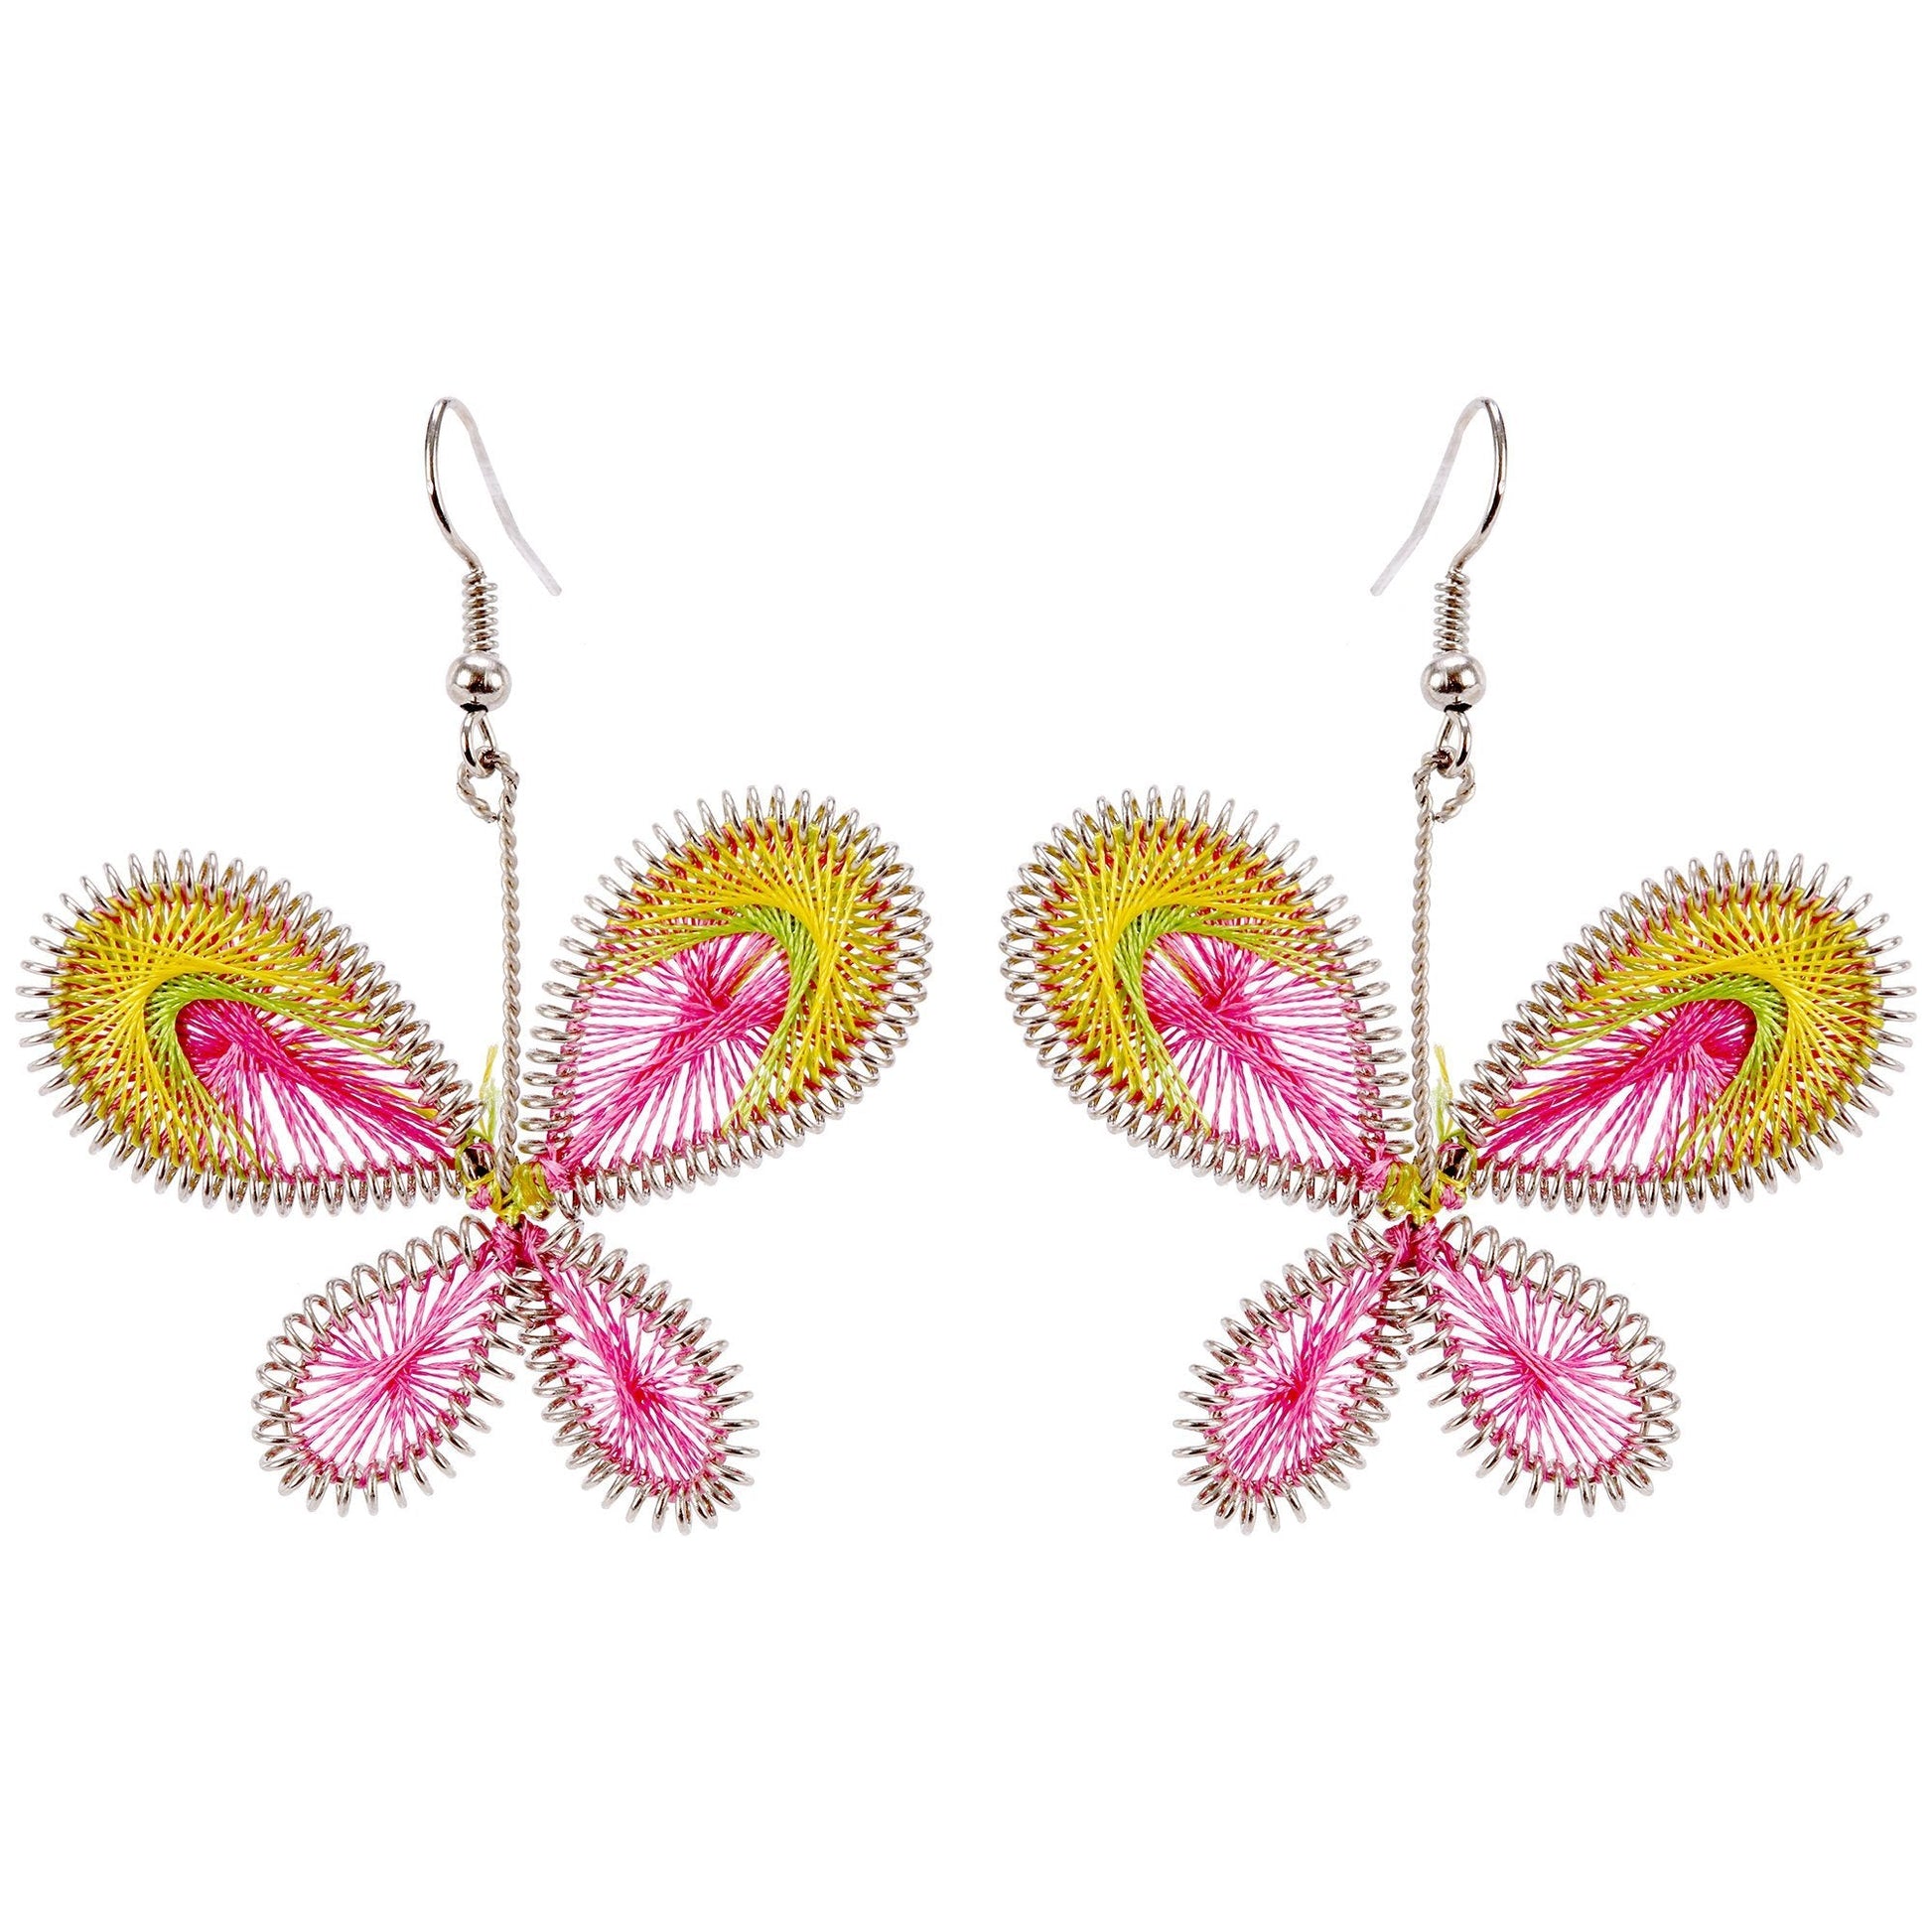 Art Of Thread Butterfly Earrings